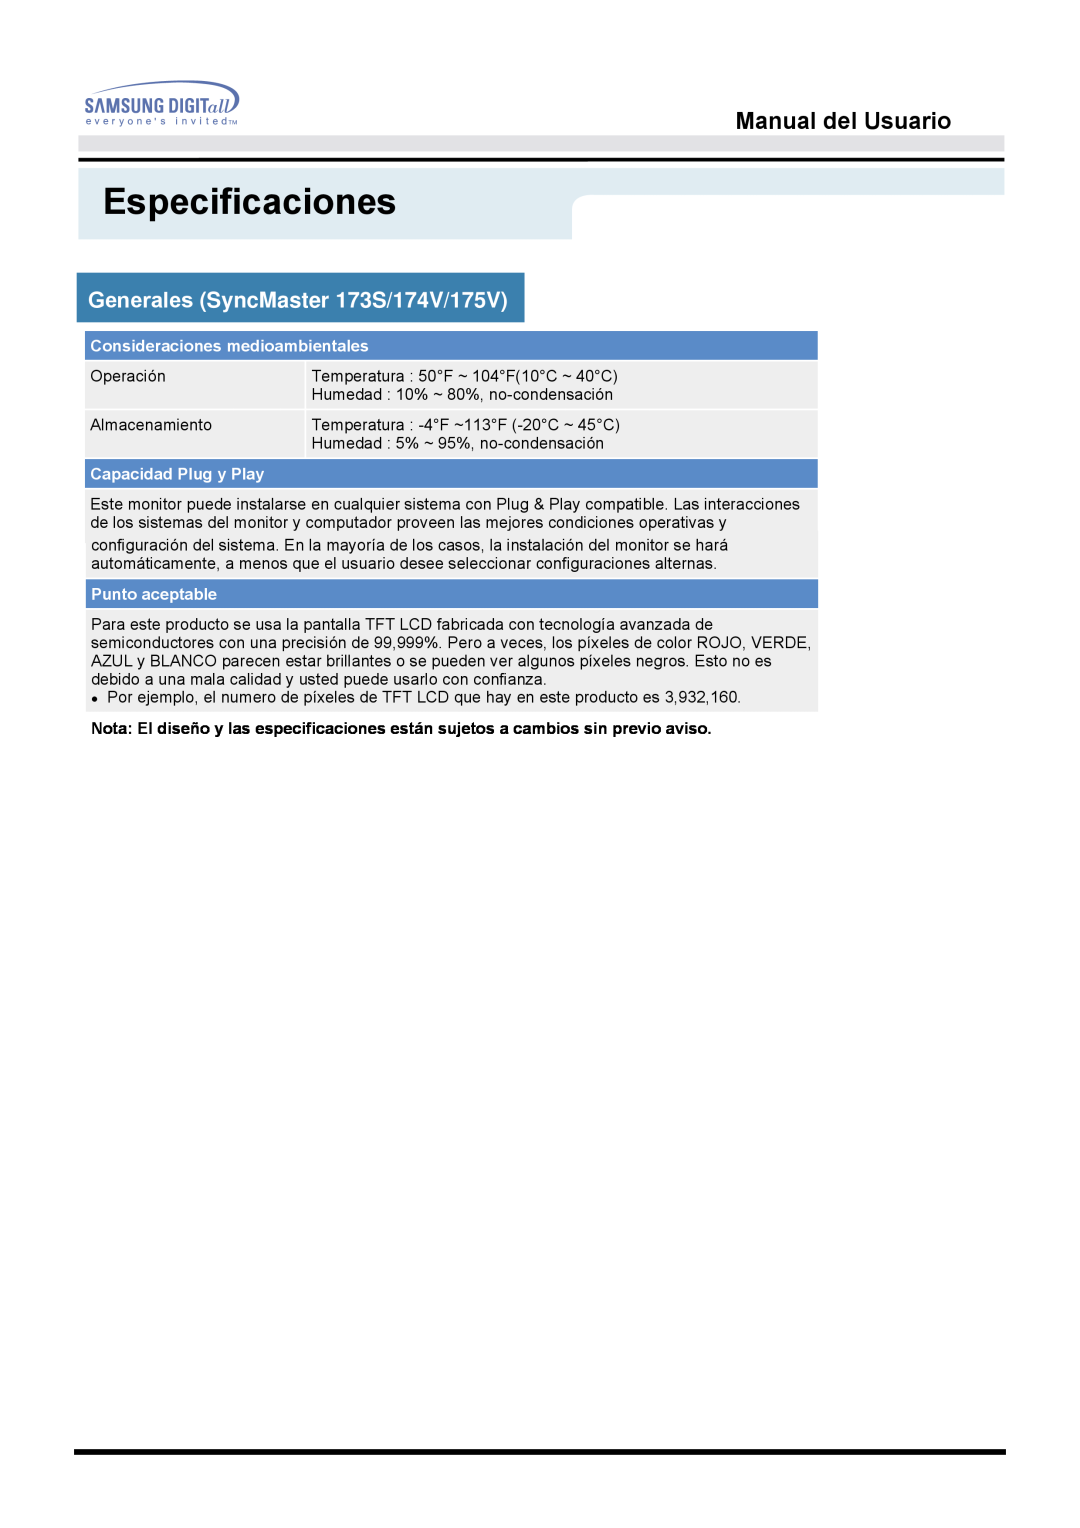 Samsung 153S manual Especificaciones, Manual del Usuario, Generales SyncMaster 173S/174V/175V, Operación 